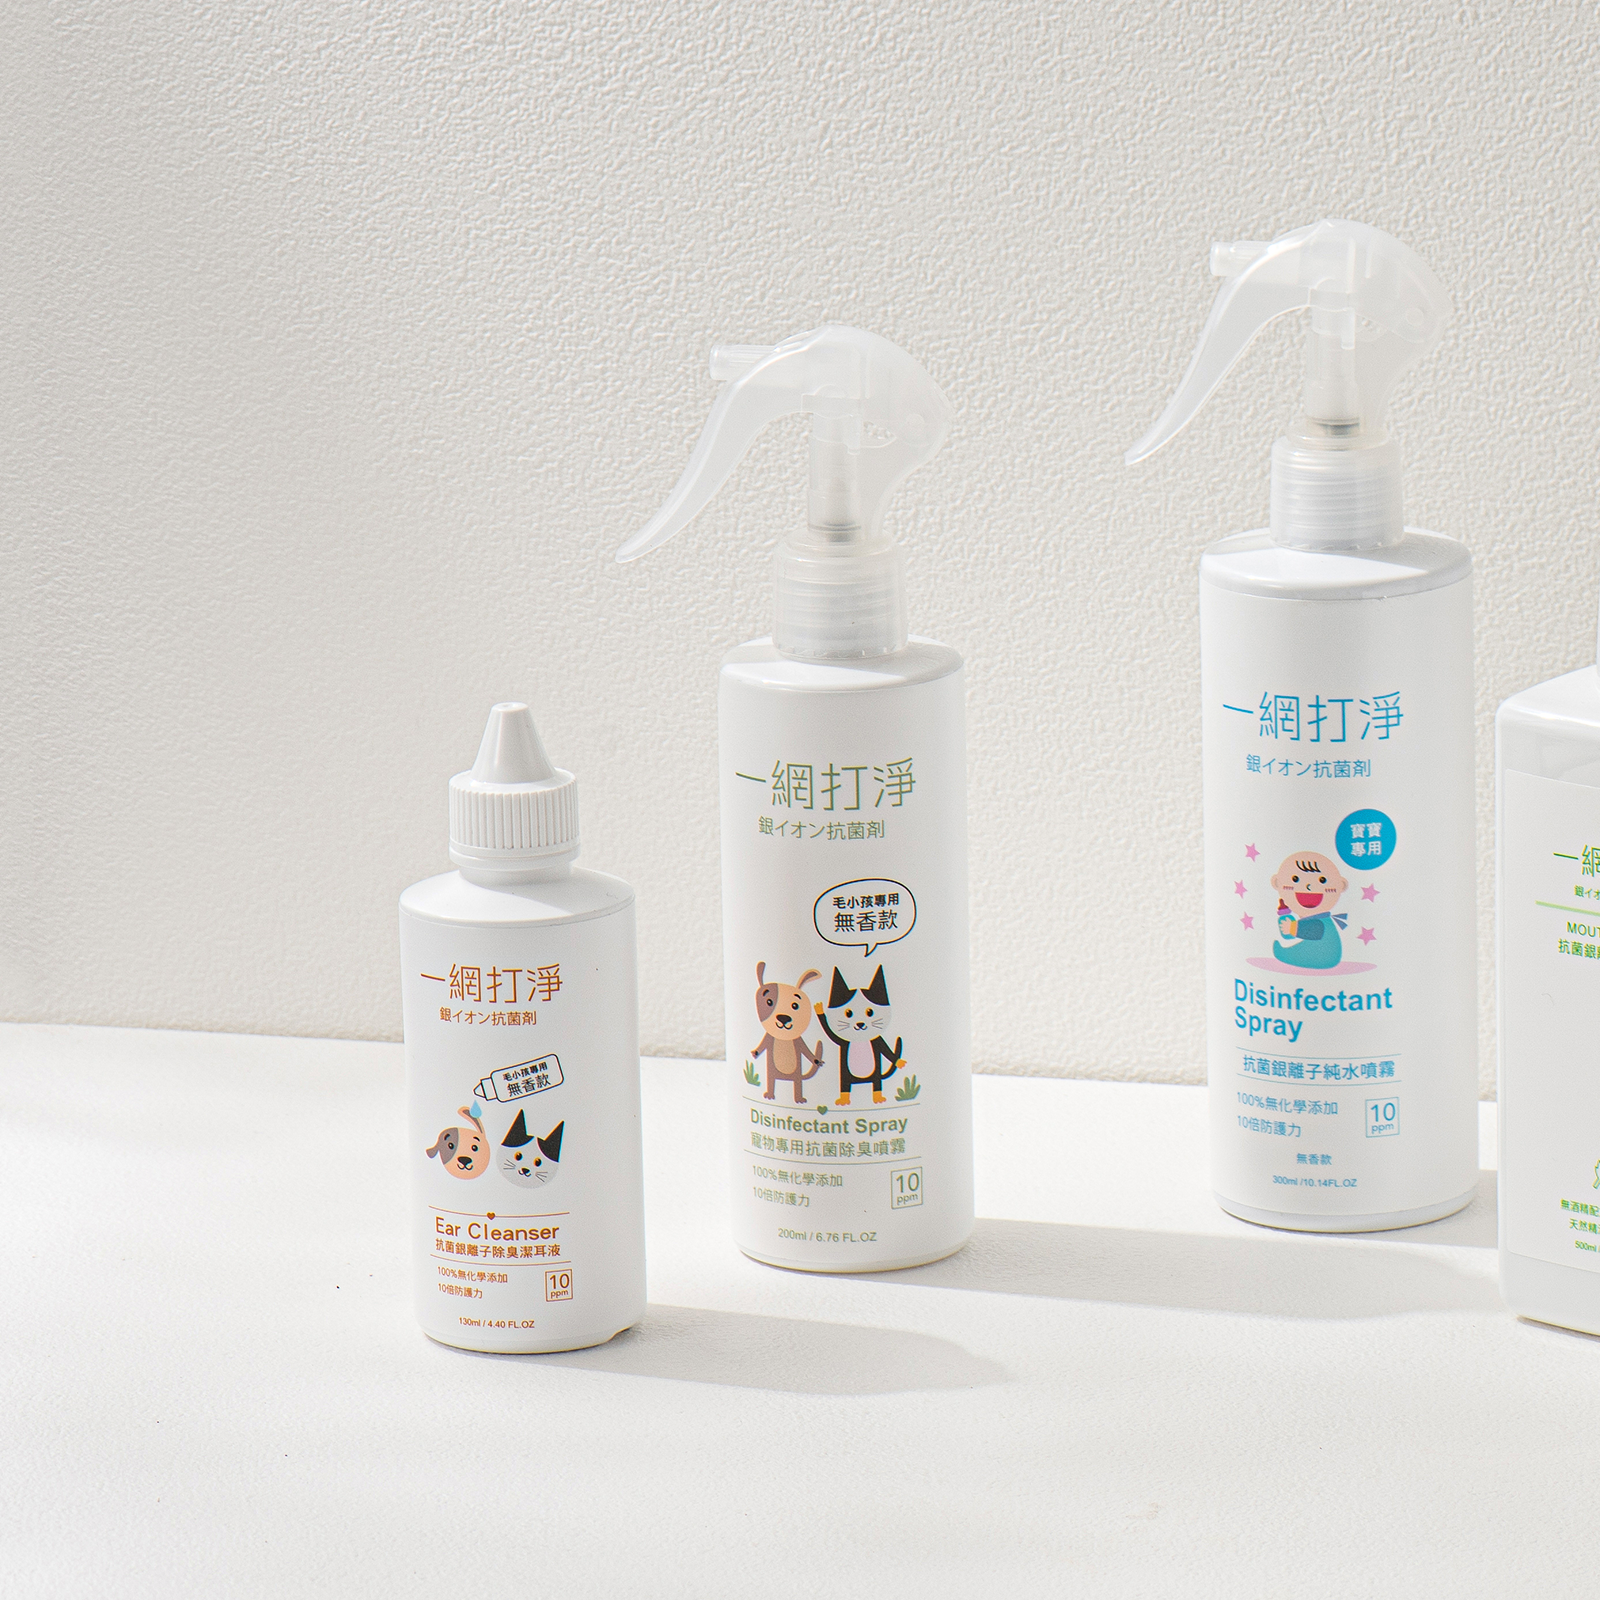 一網打淨 抗菌銀離子除臭噴霧 AG Clean Pet Disinfectant Spray 200ml 寵物專用